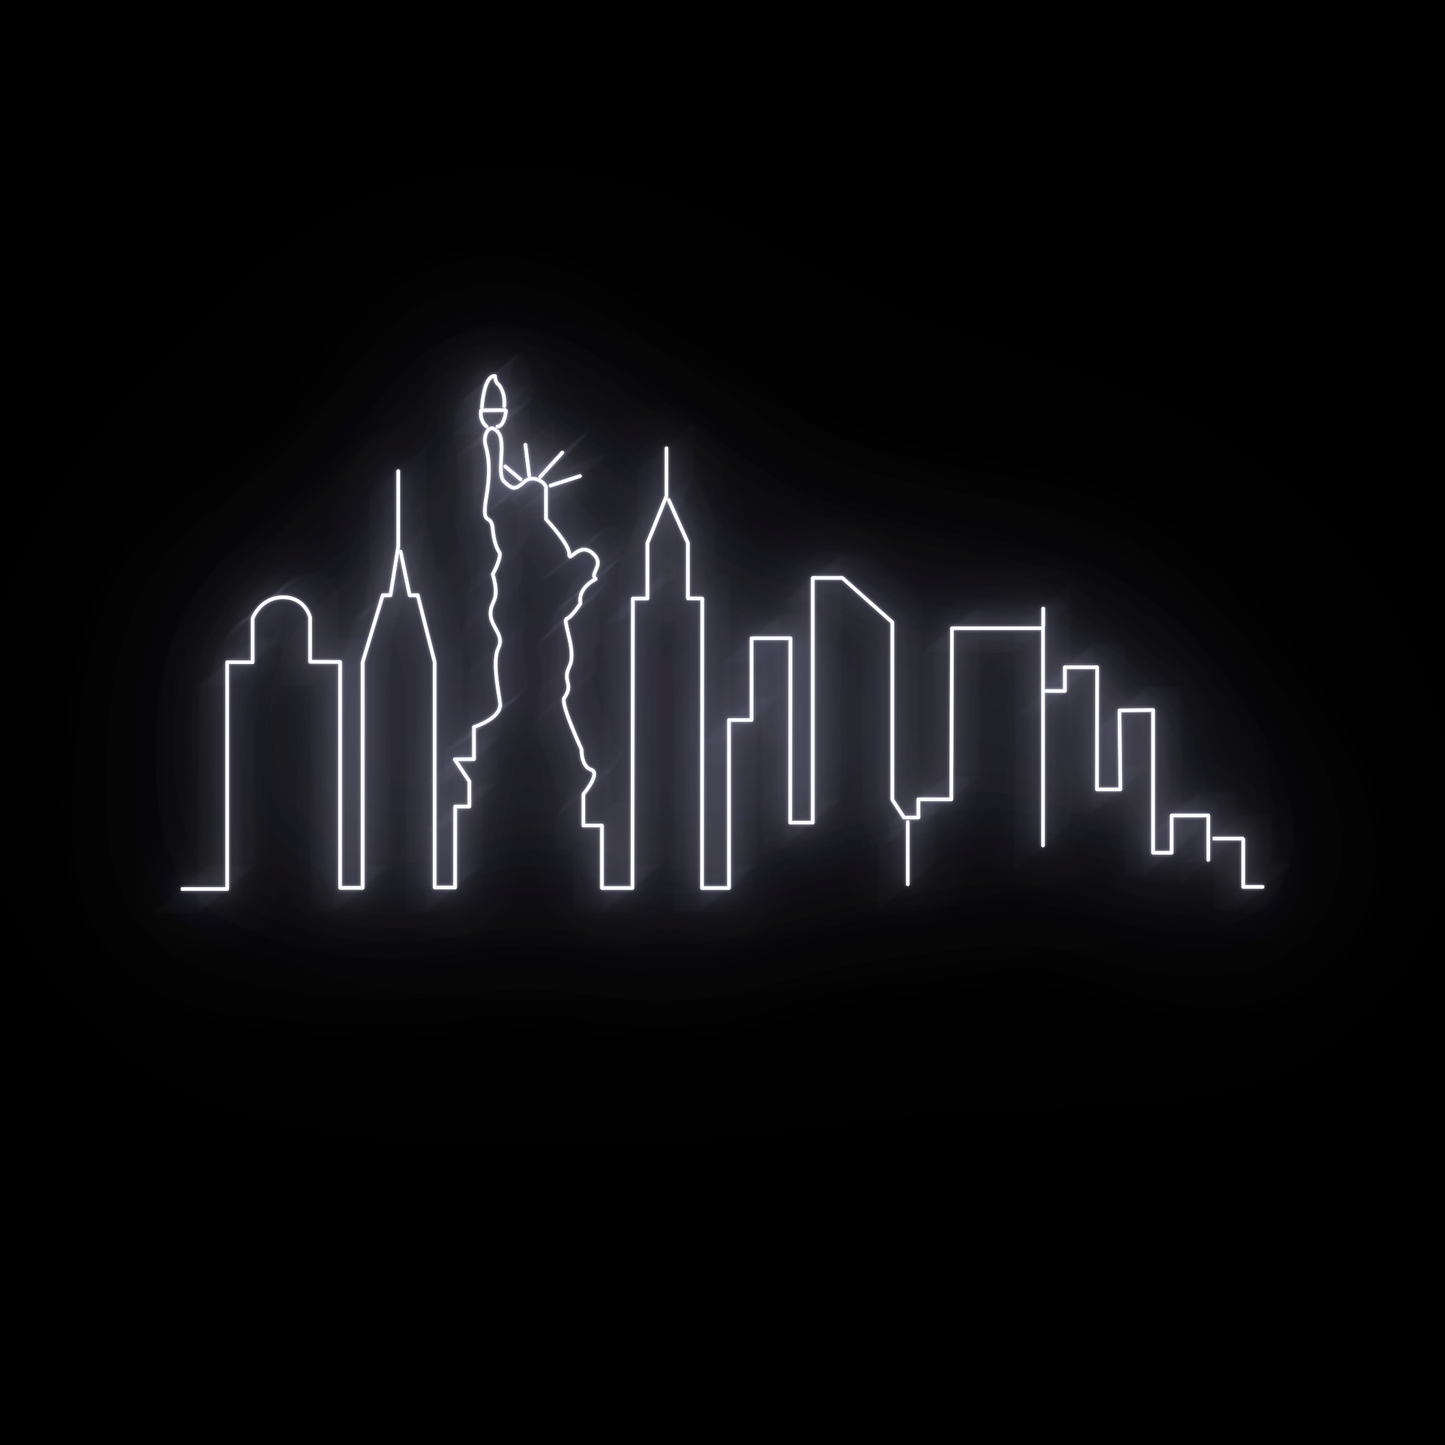 Skyline NYC